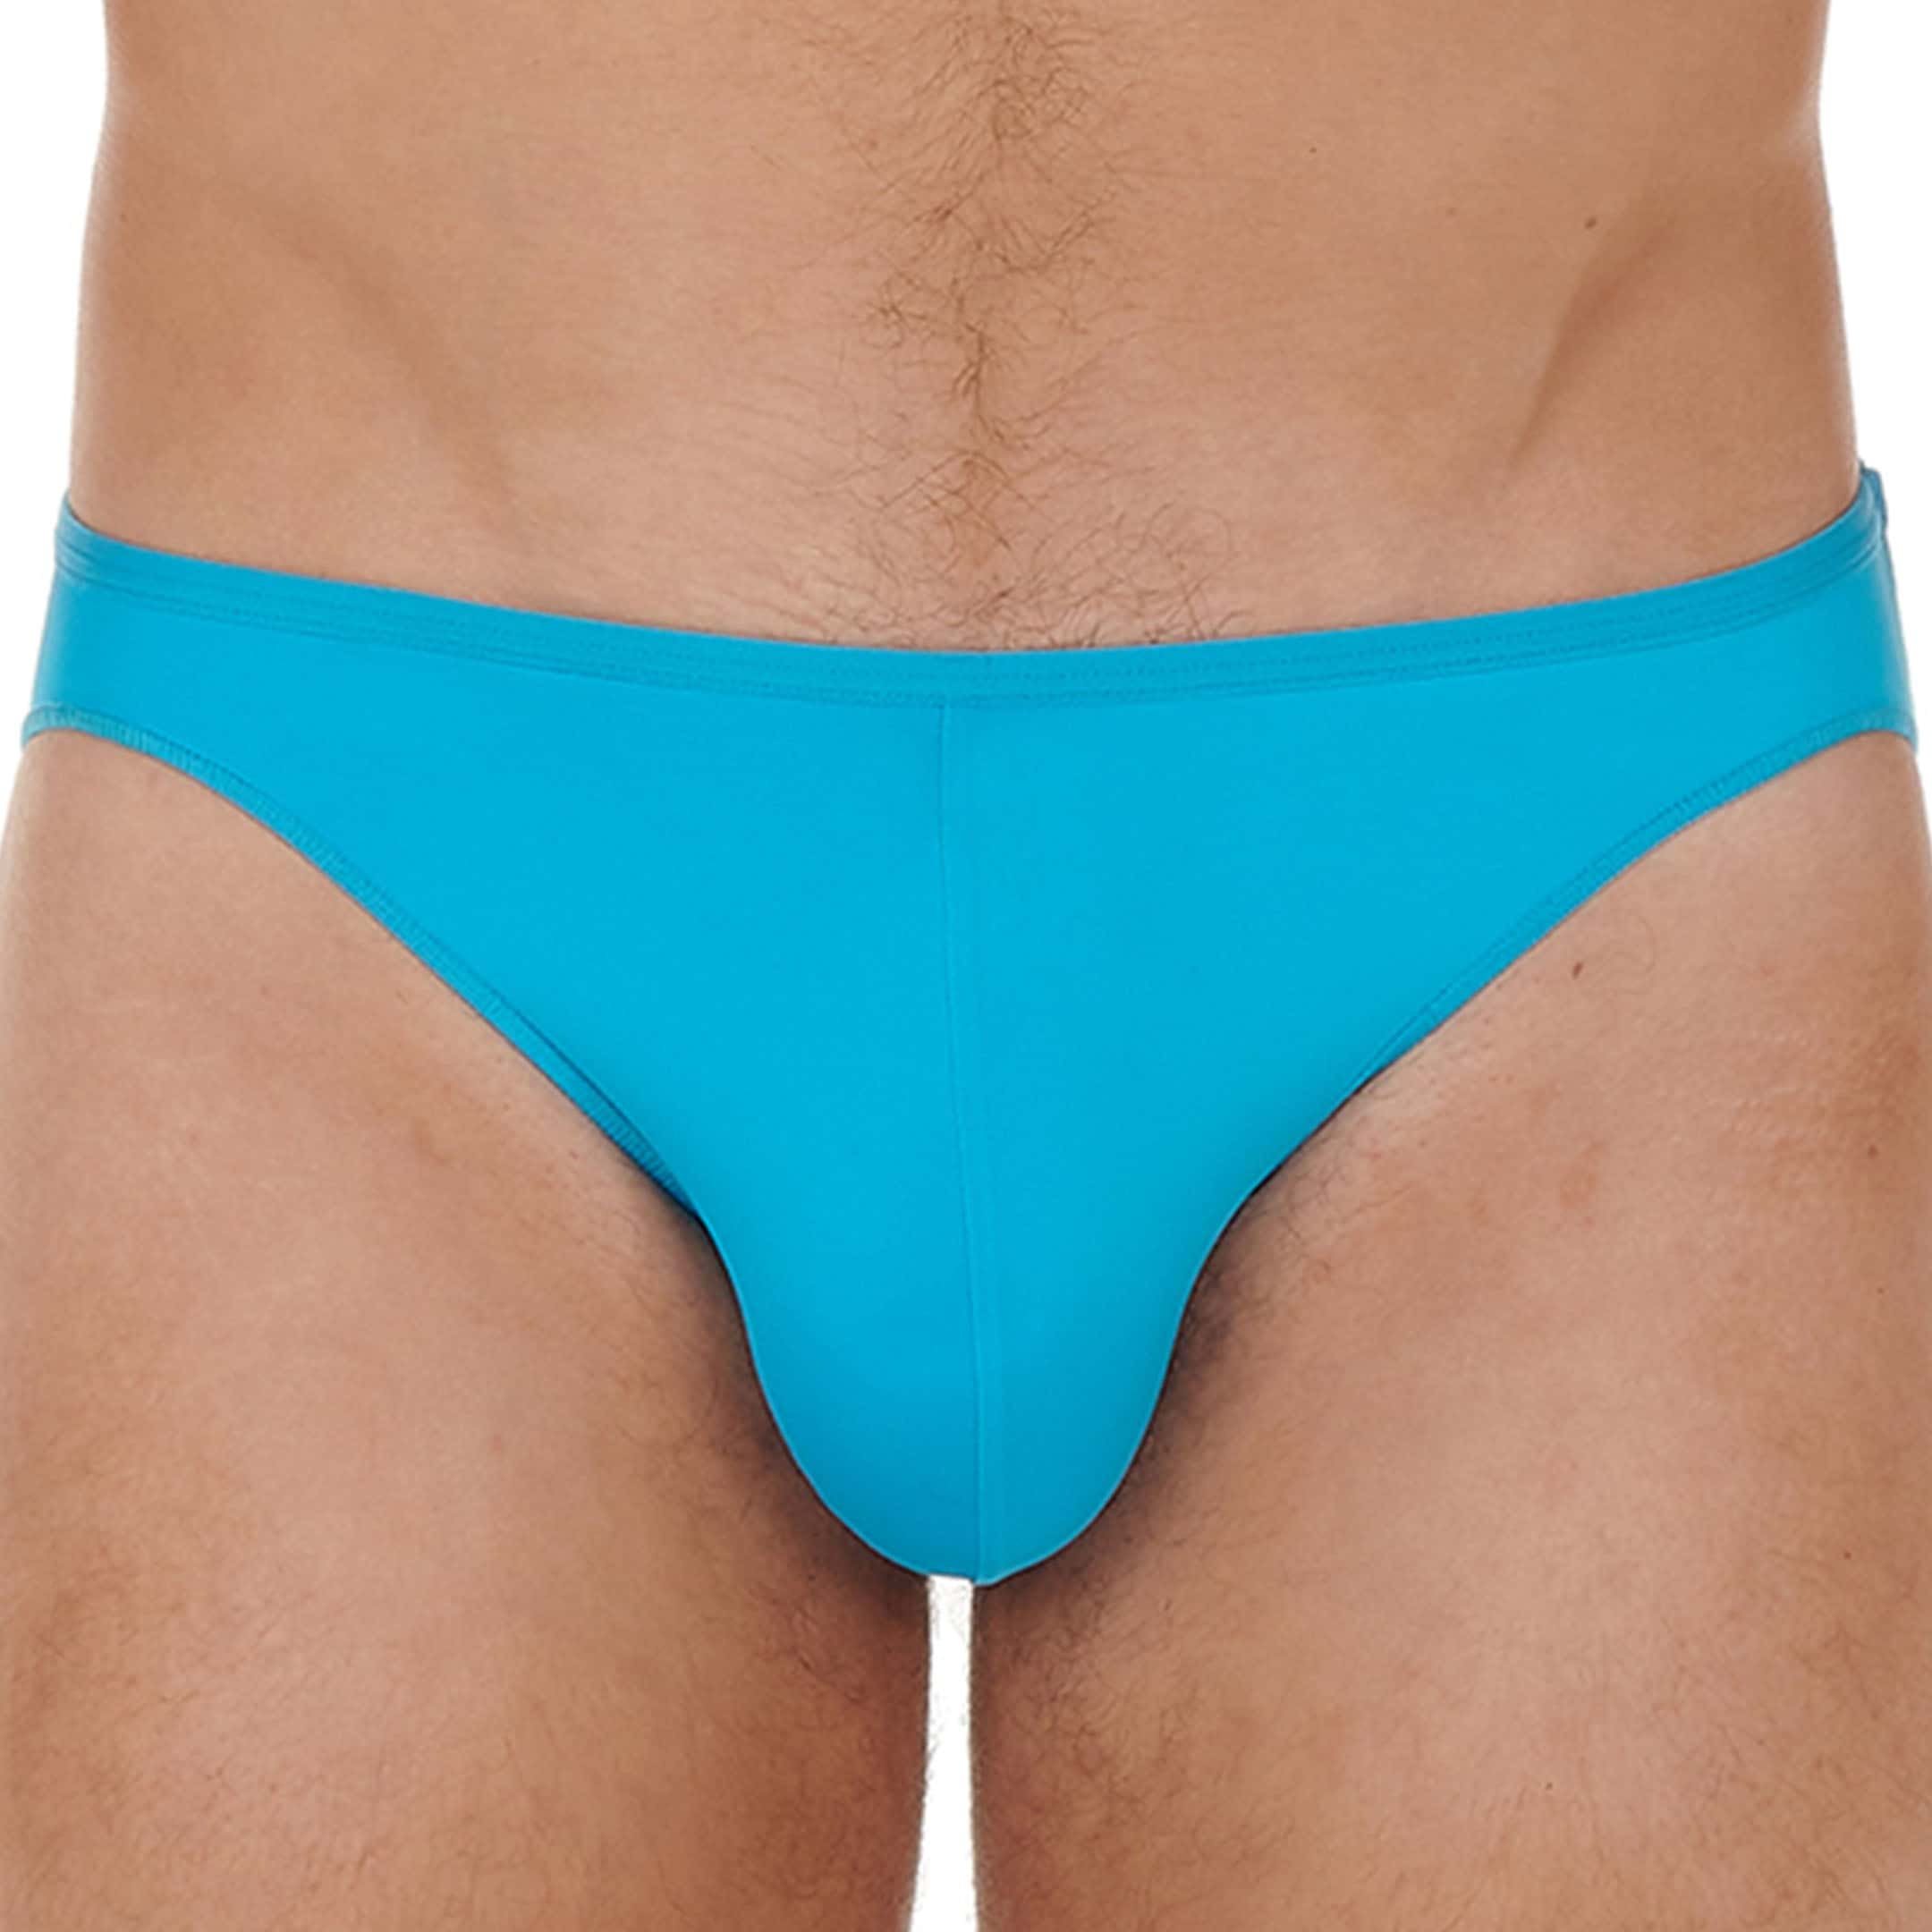 Hom Men navy blue Plume temptation G-string thong underwear size L XL